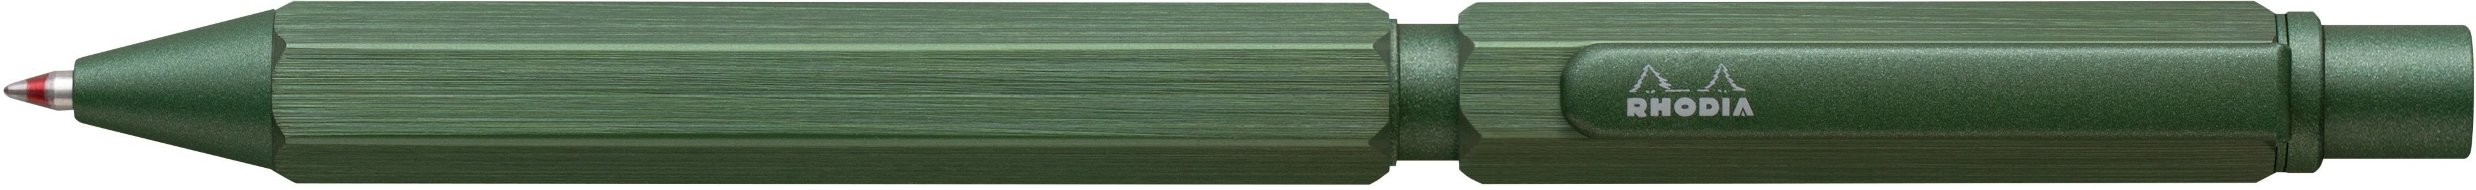 Ручка мультисистемная Rhodia MULTI PEN, 3в1 (черный+красный+кар 0,5), зеленый